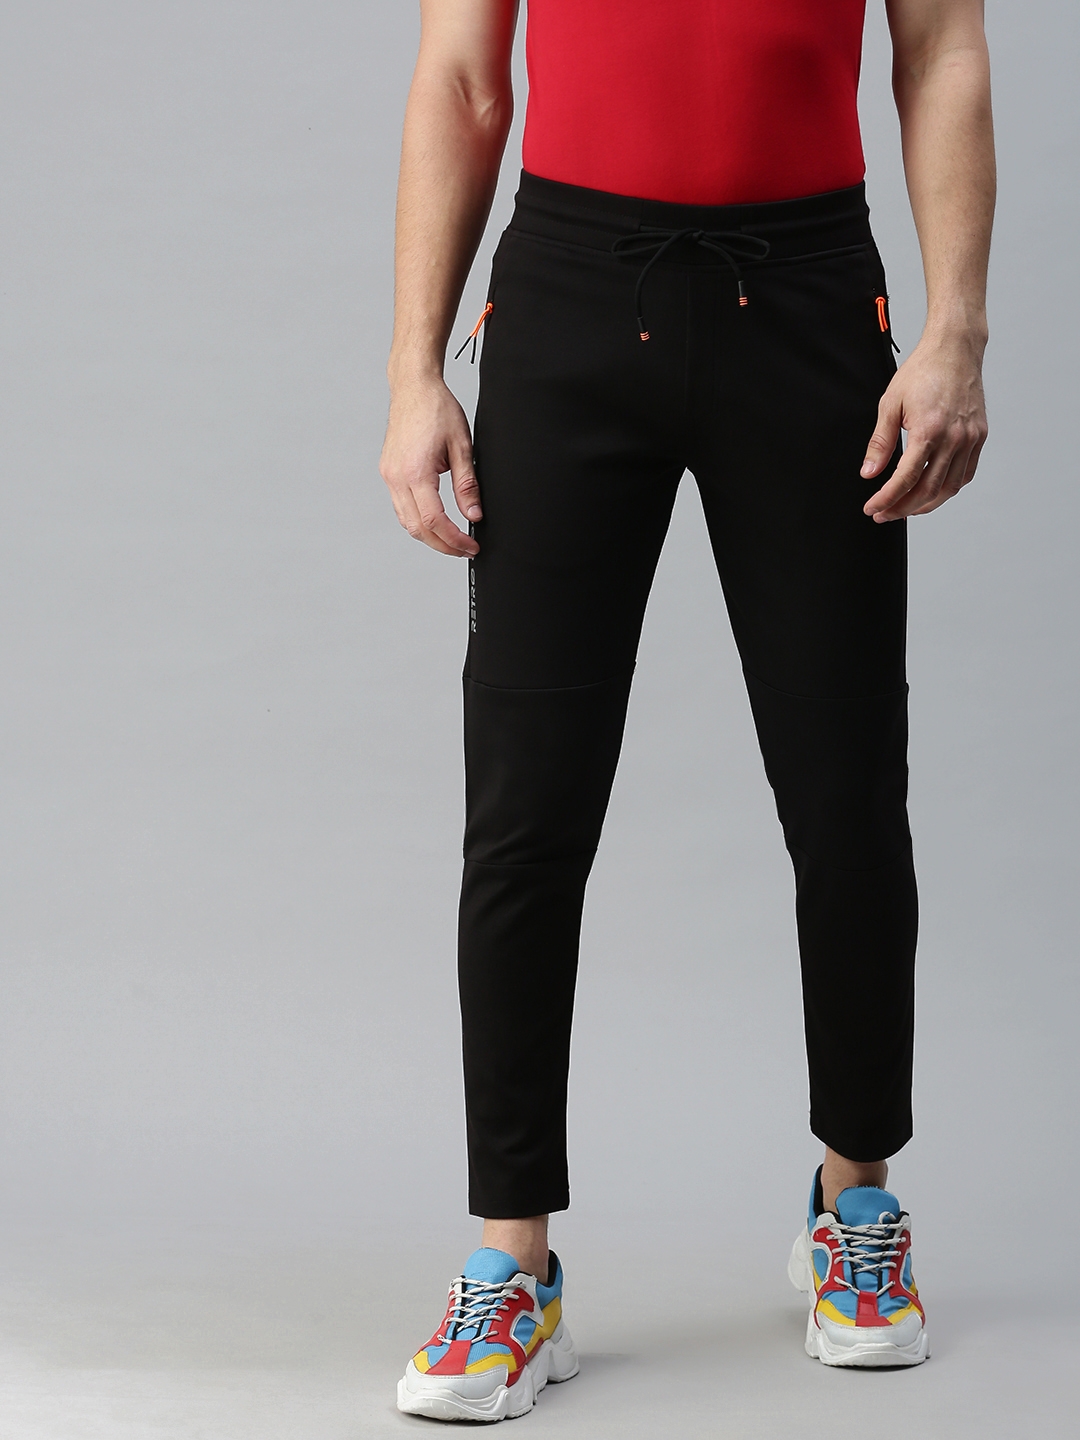 Buy Highlander Black Slim Fit Track Pants for Men Online at Rs358  Ketch